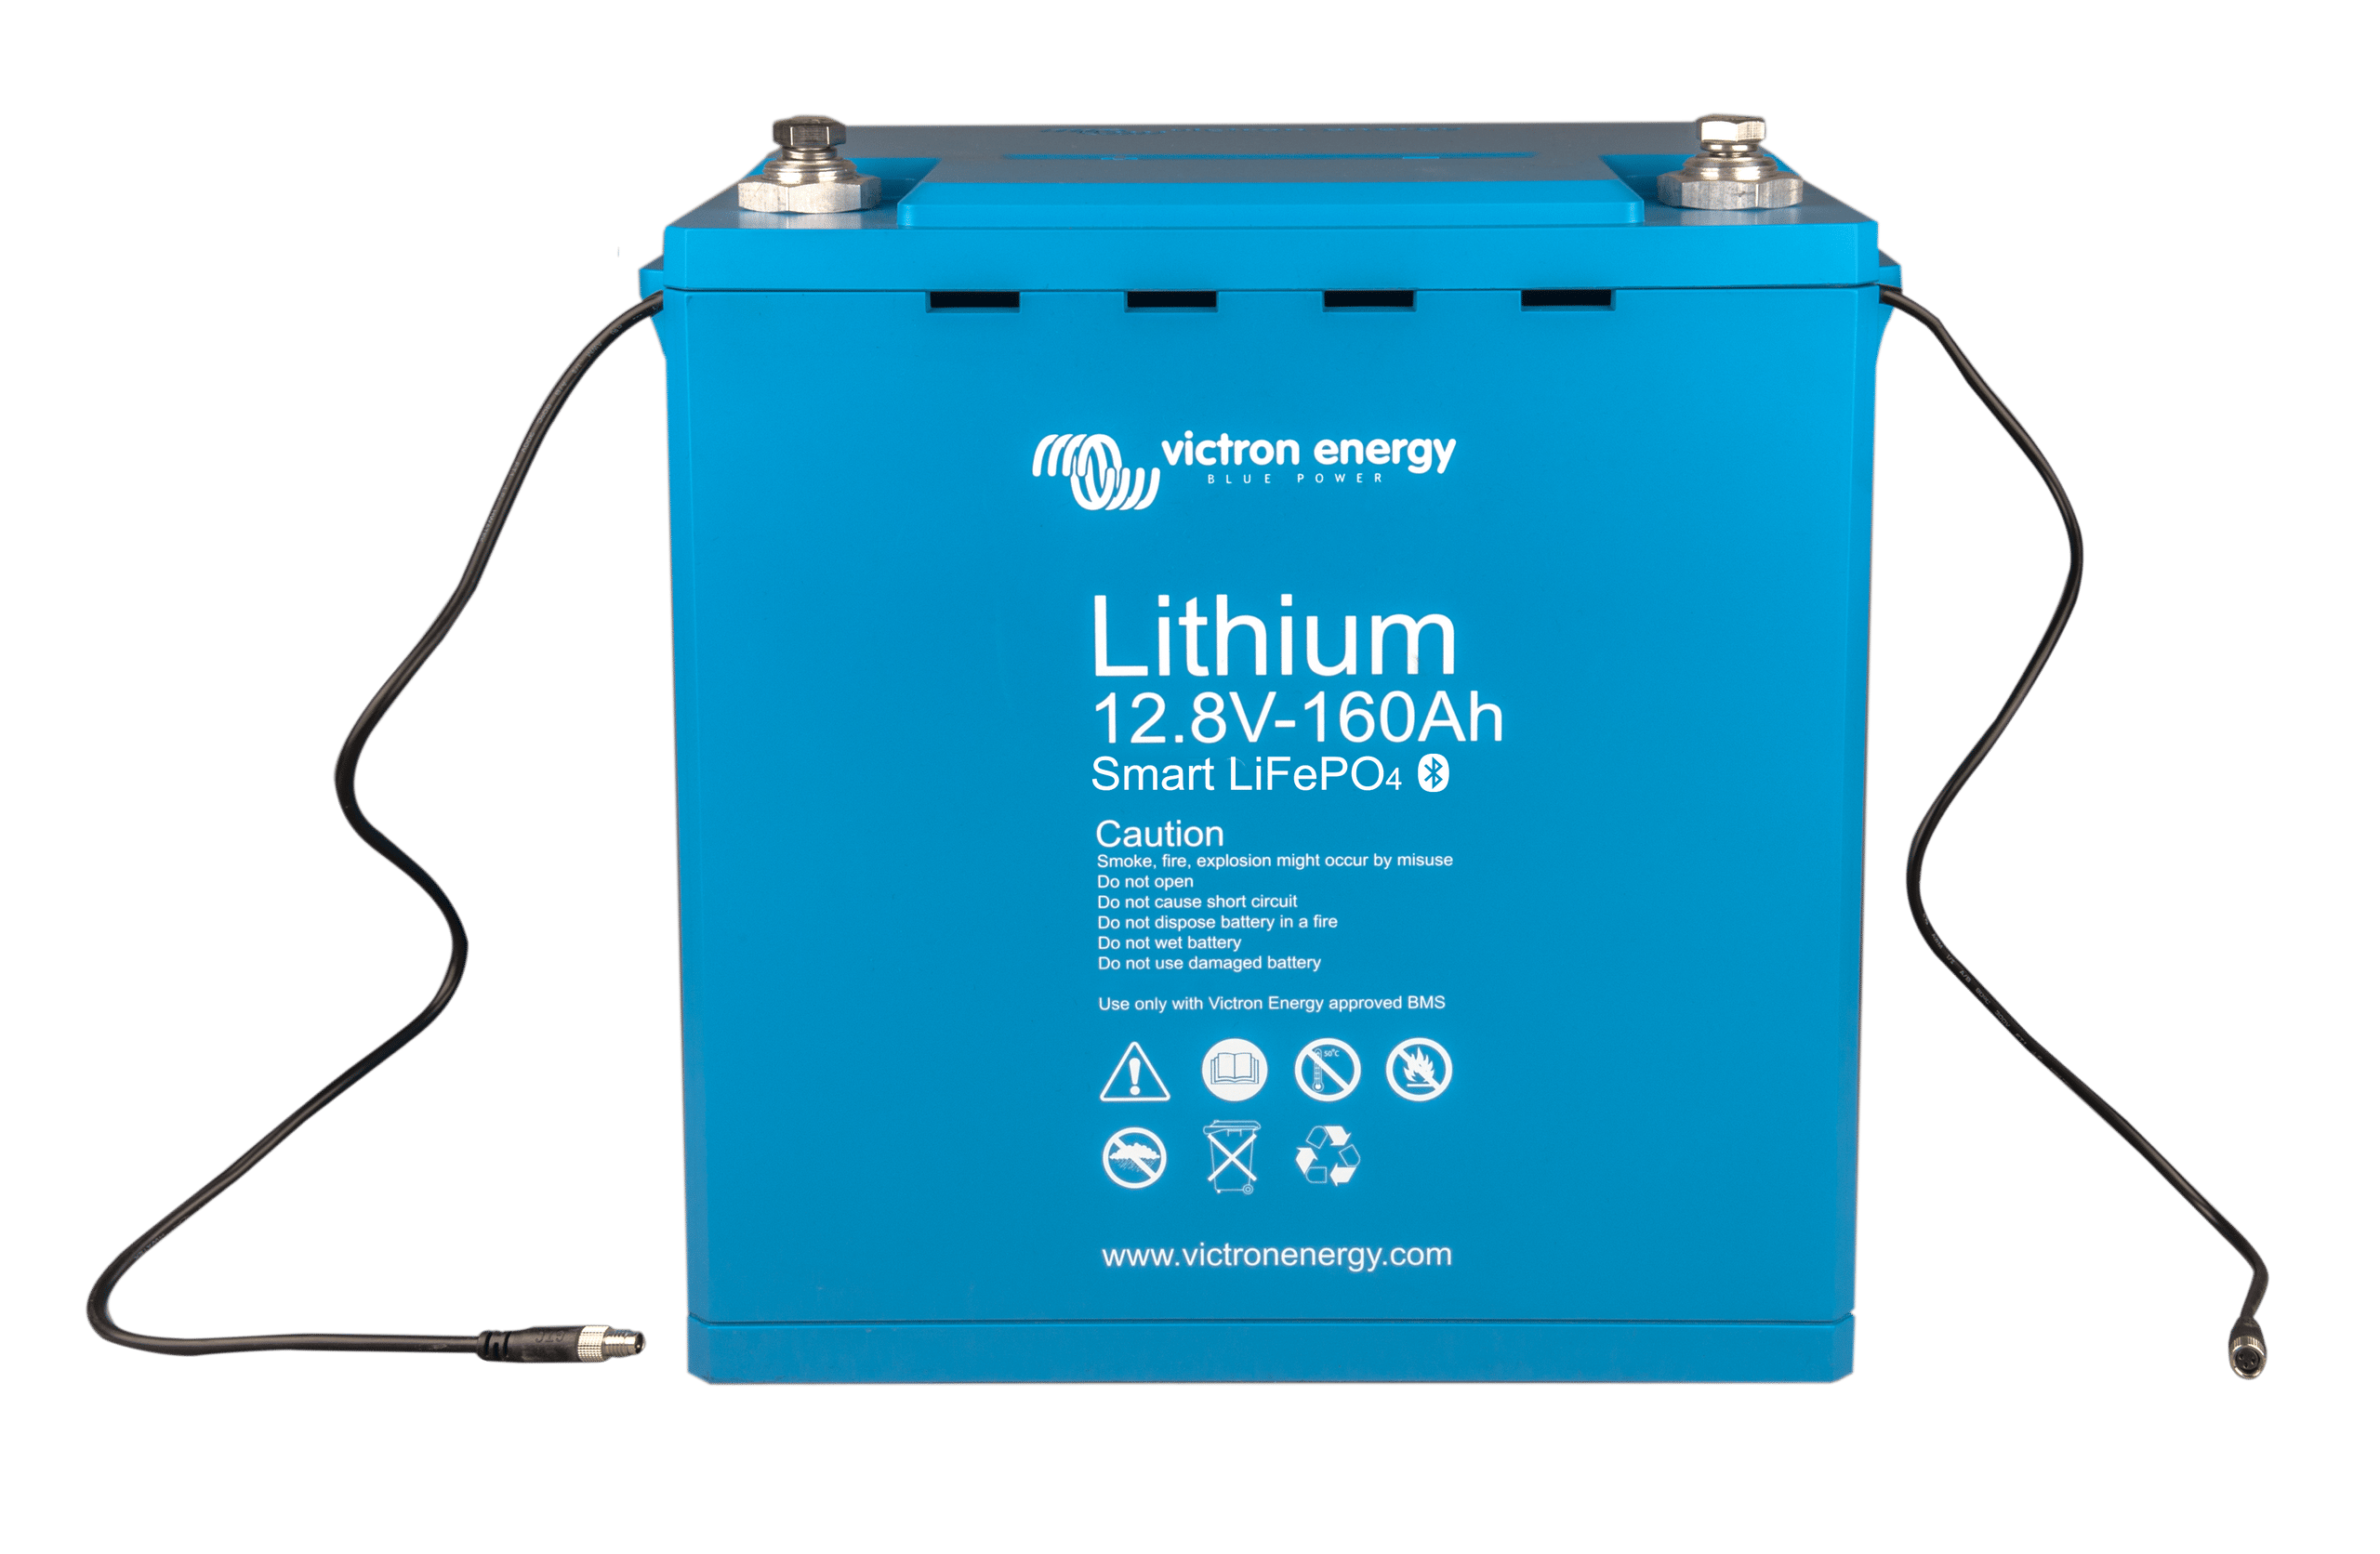 Custom 12V 400Ah lithium battery packs for solar power system